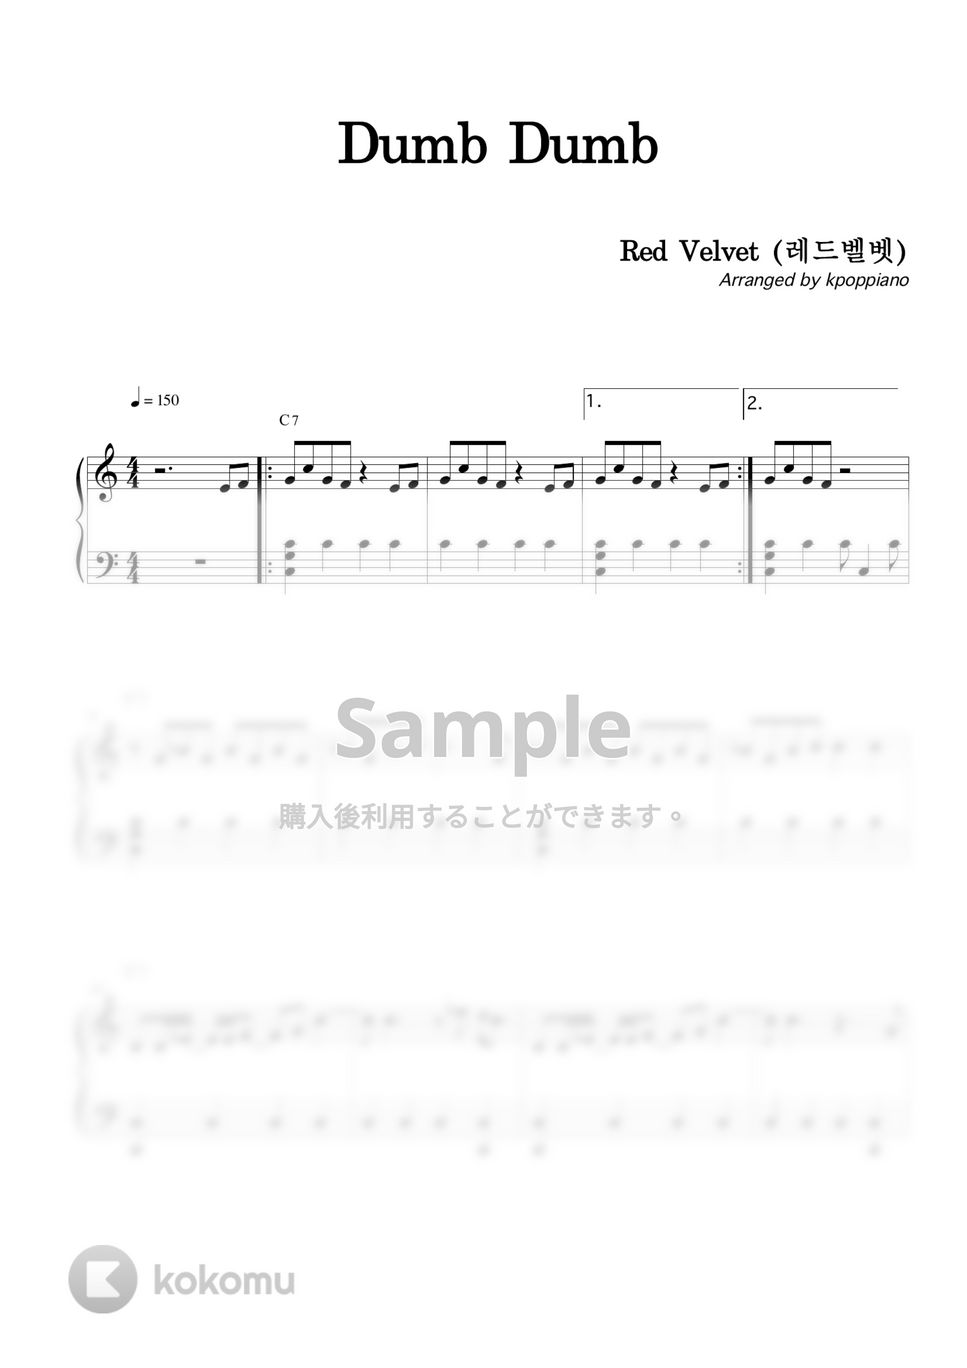 Red Velvet - Dumb Dumb by KPOP PIANO